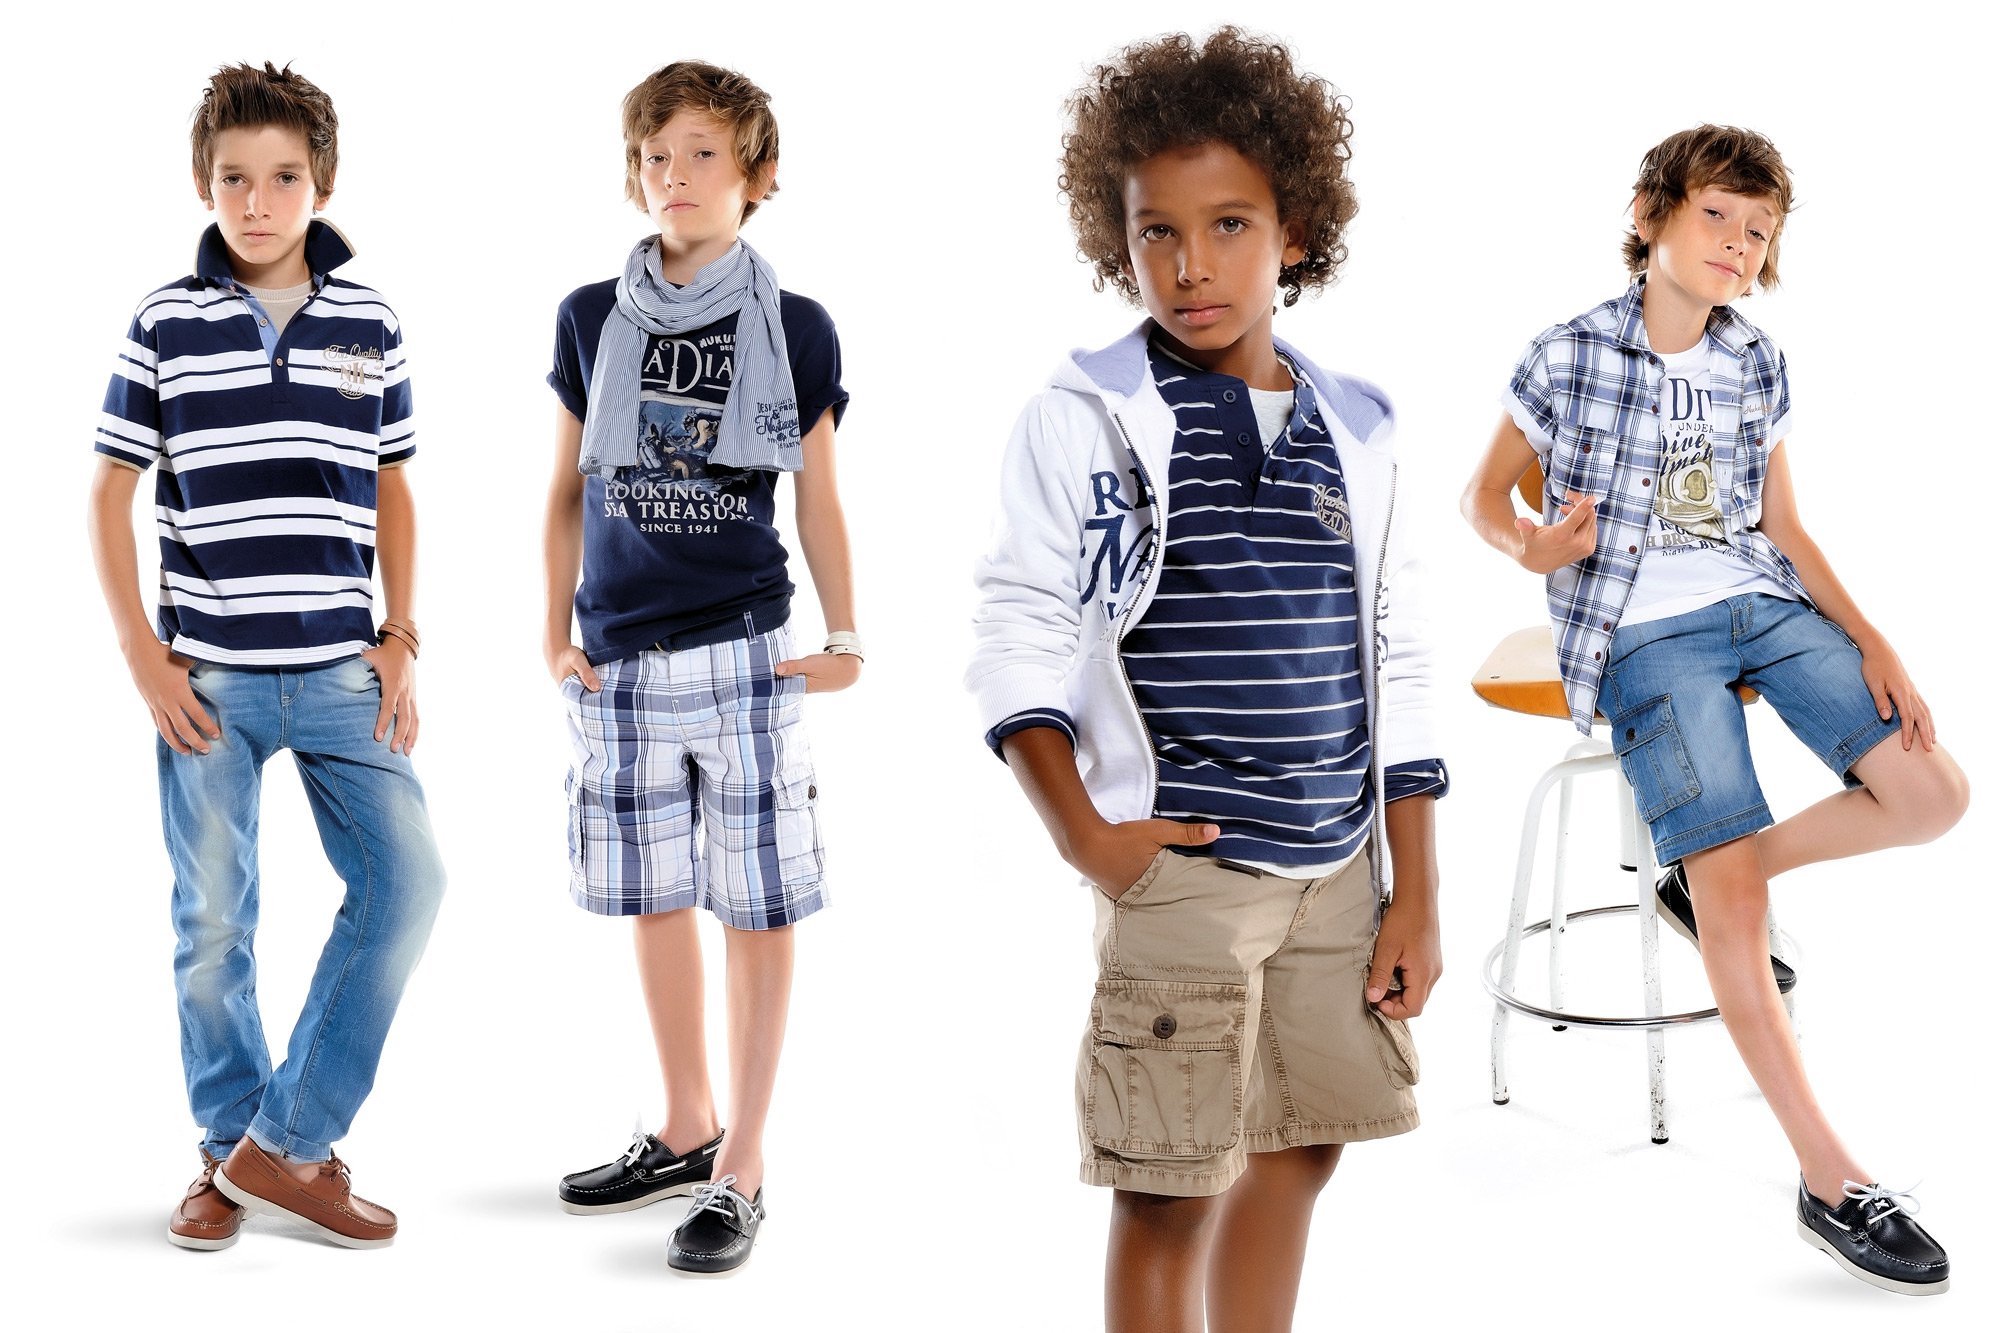 Сайт для подростков. Одежда для подростков. Стильная одежда для мальчиков. Одежда для подростков мальчиков. Модная одежда для мальчиков.